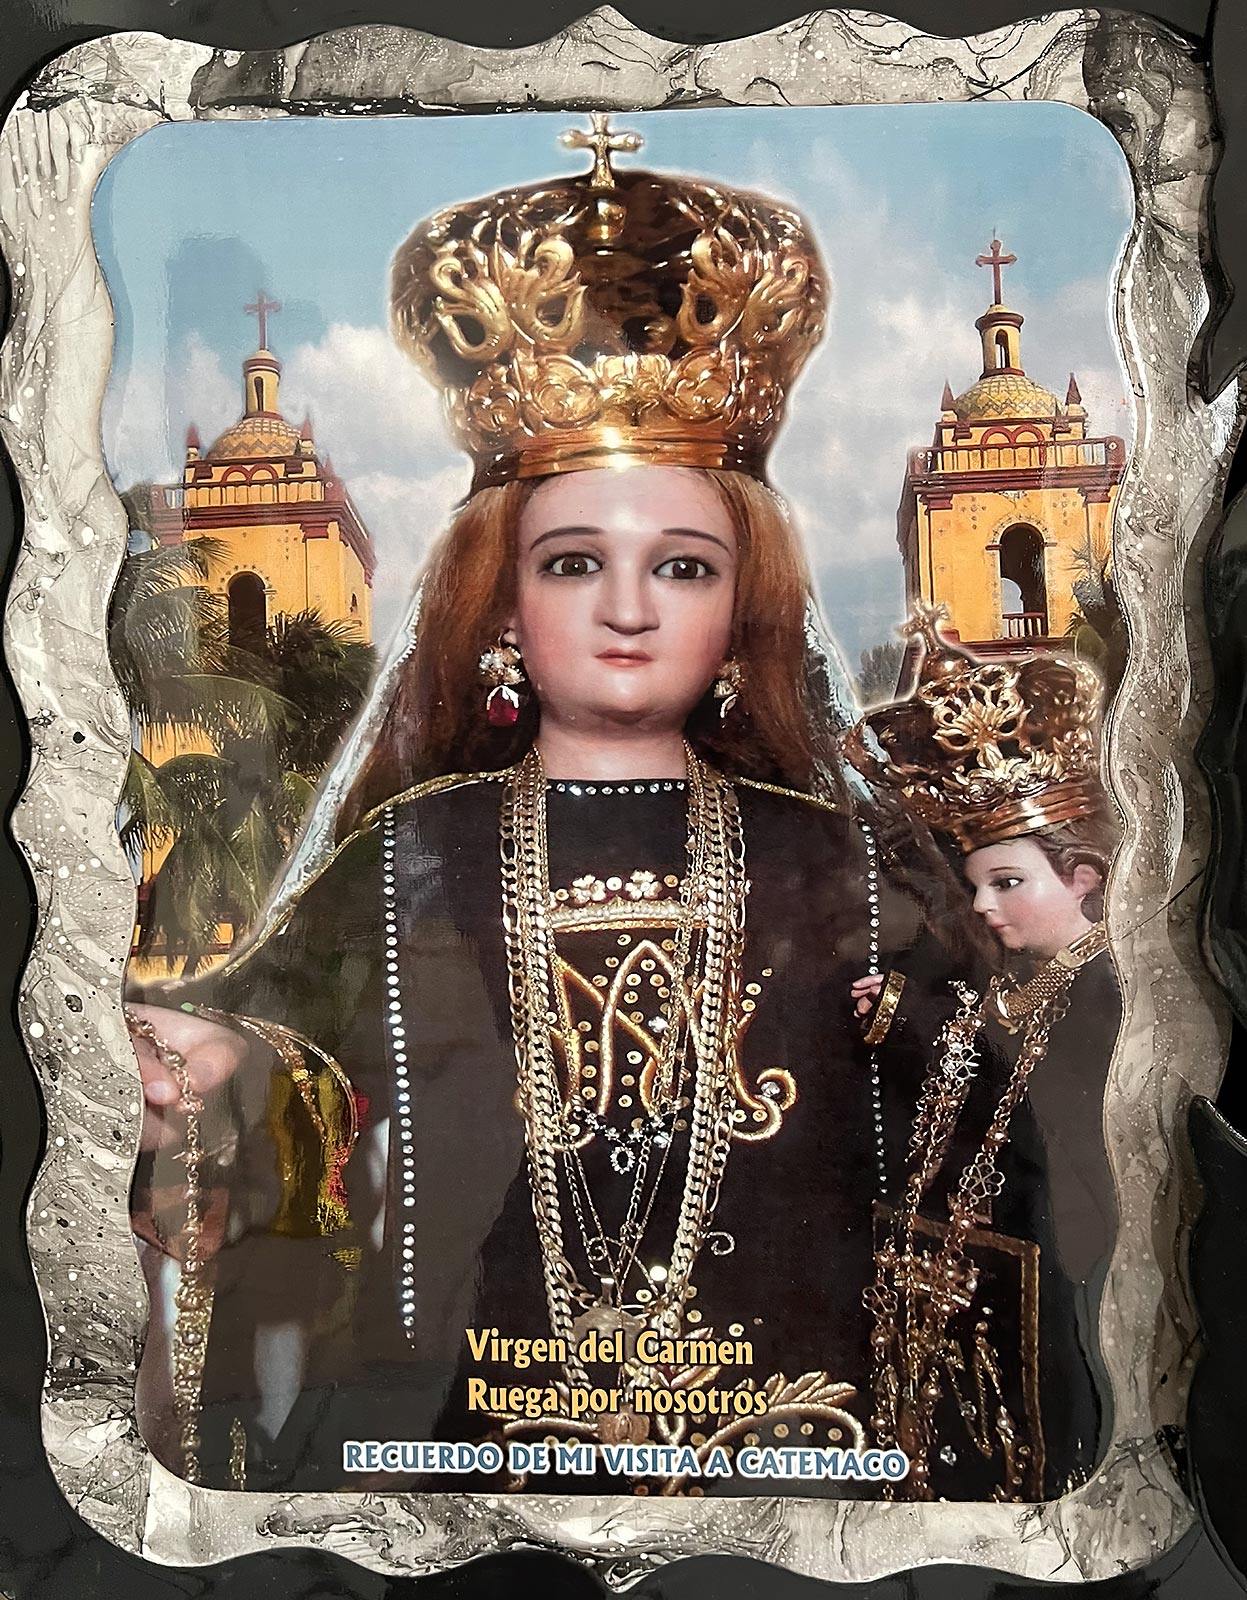 Jesus haurra eusten duen Mariaren estatua miragarriaren pintura, Nuestra Señora del Carmen santutegia, Catemaco